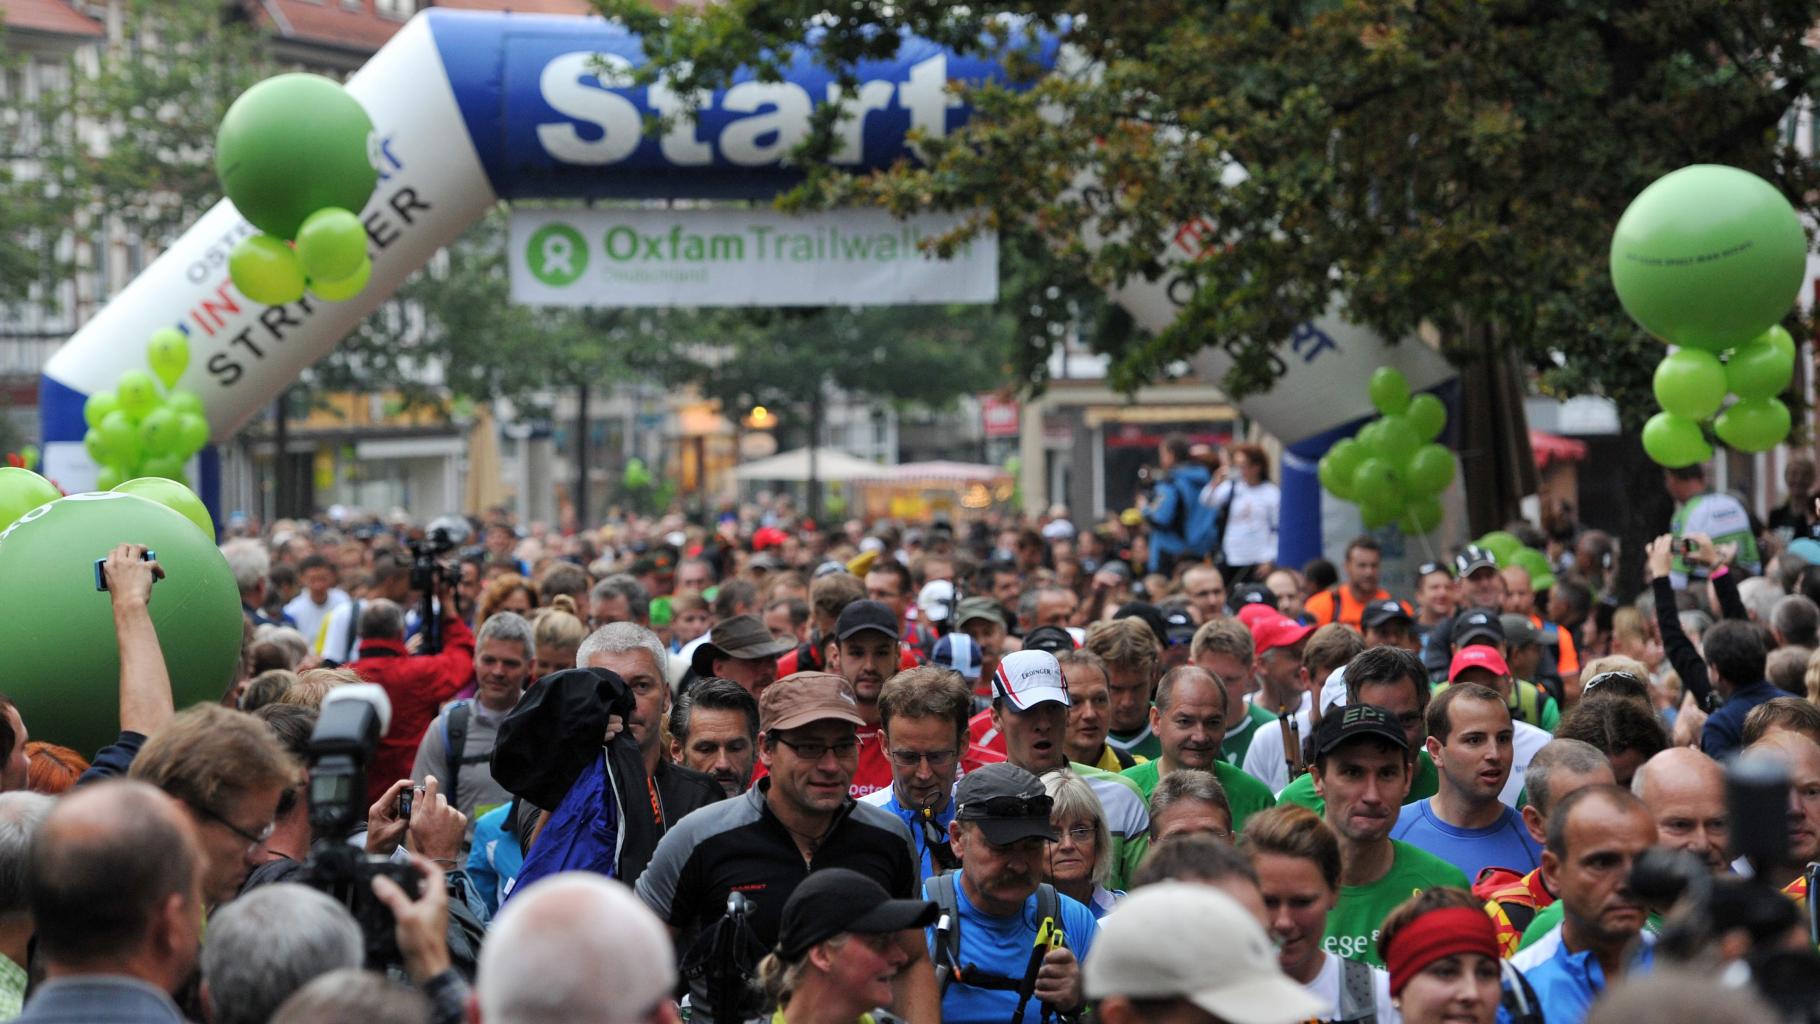 140 Teams starten am Kornmarkt in Osterode am Harz beim 3. Oxfam Trailwalker.